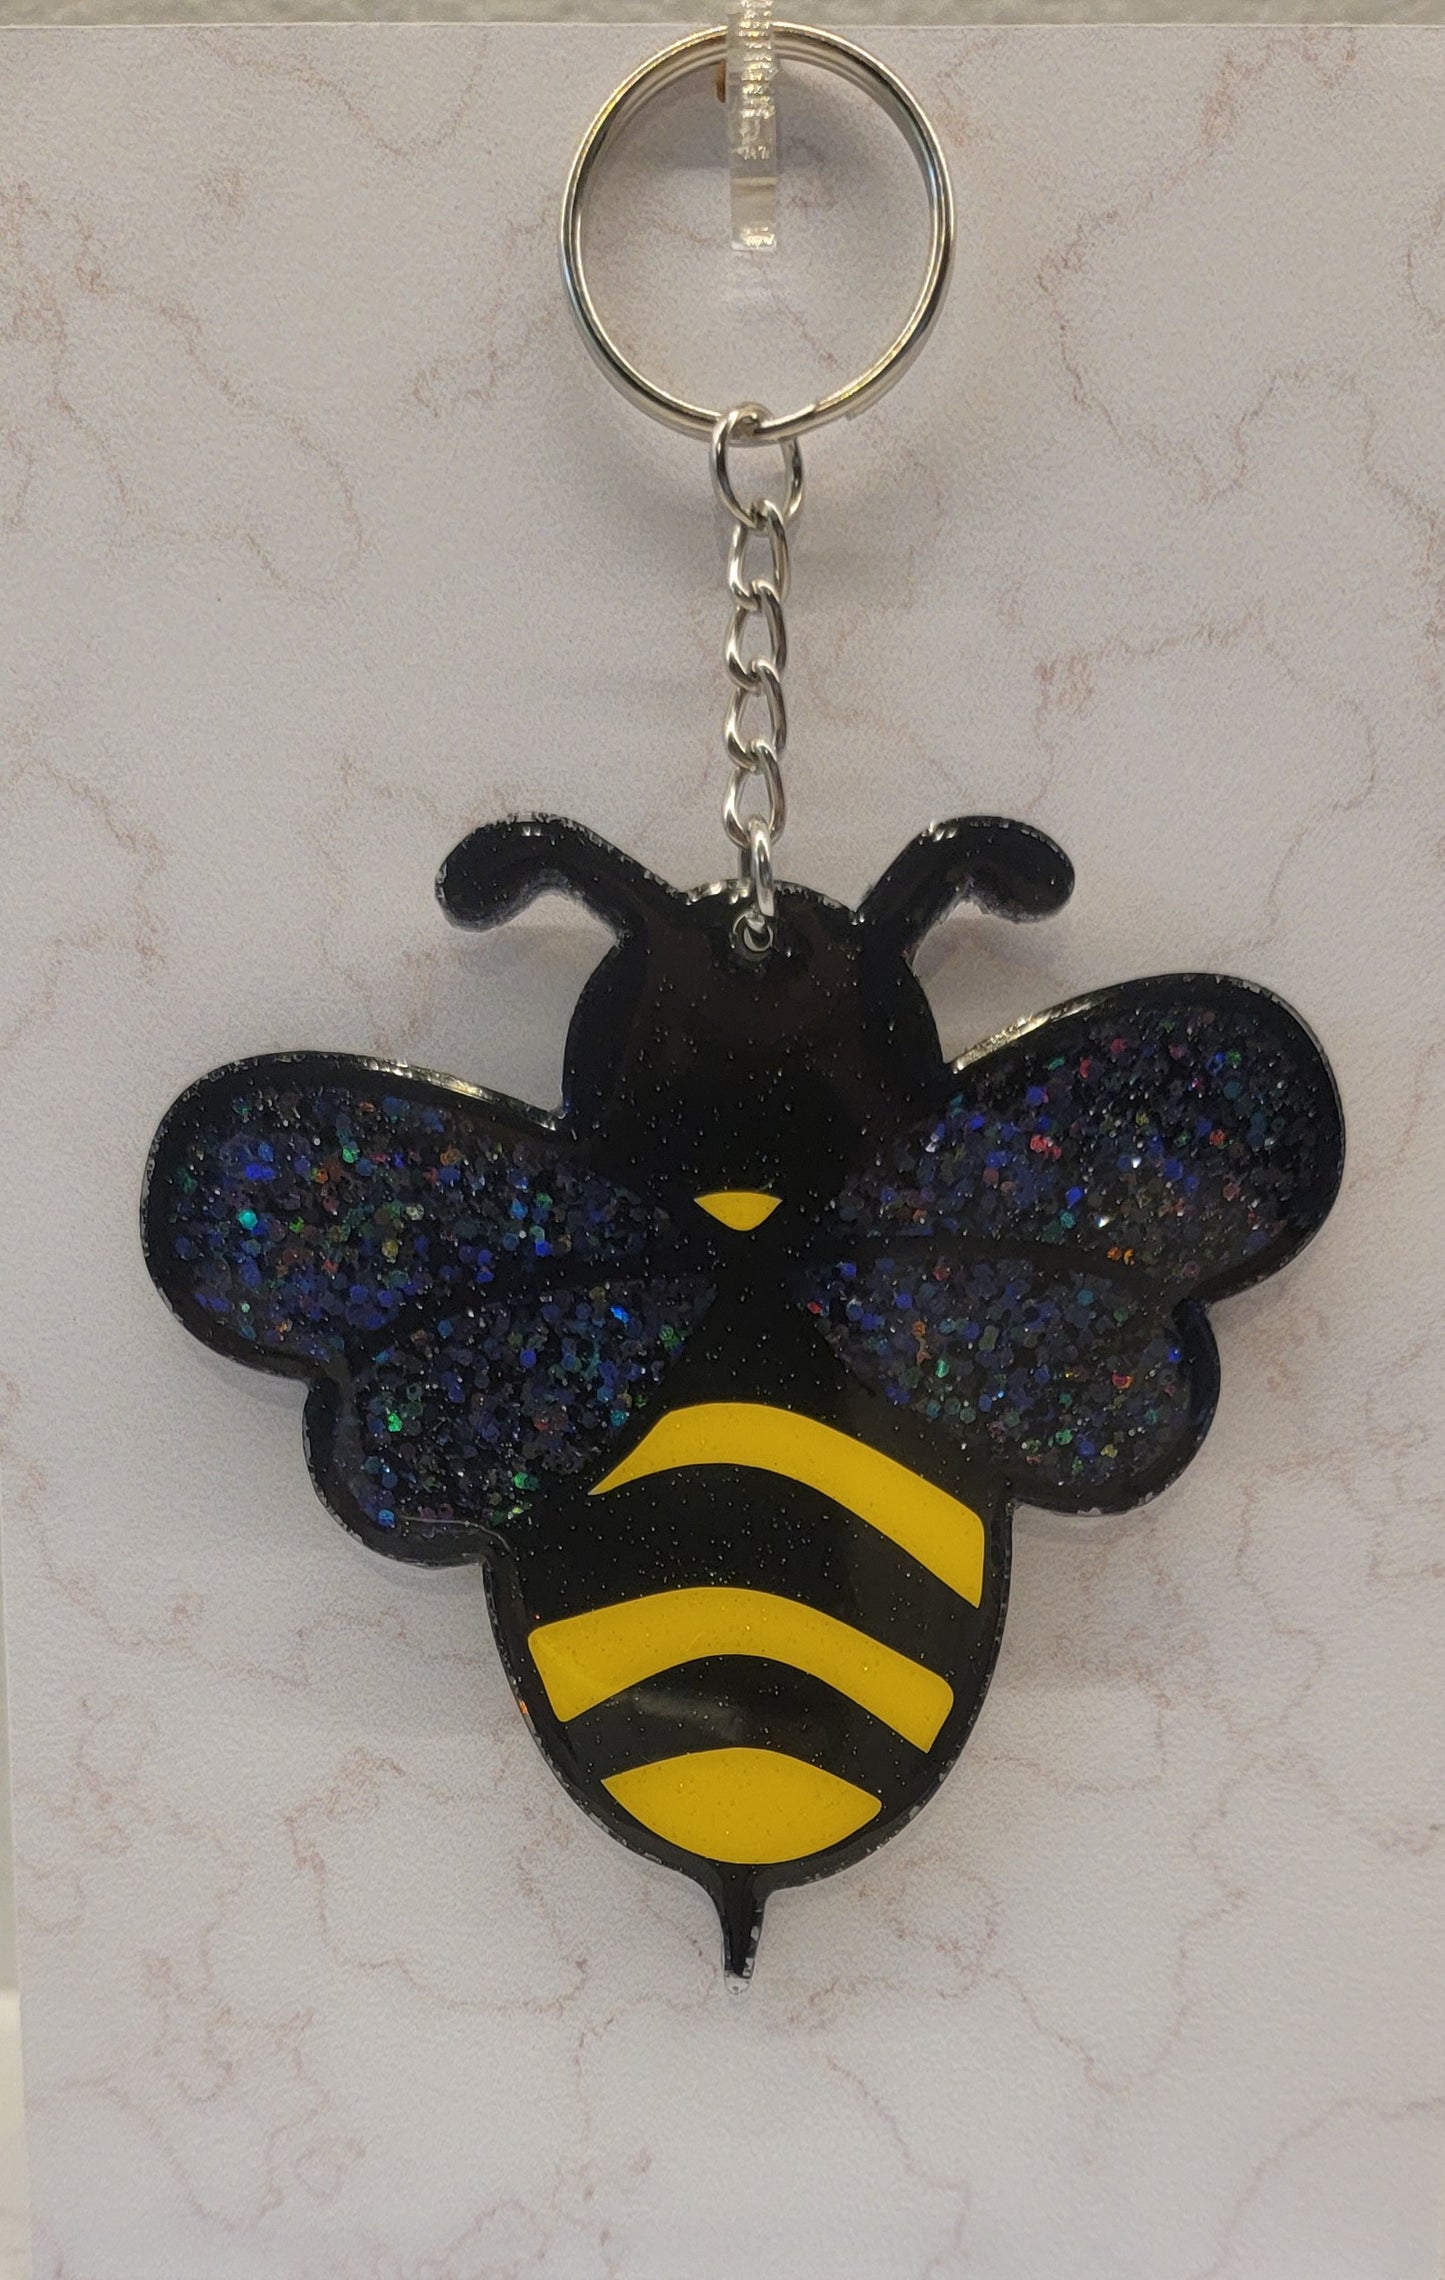 Bee keychain